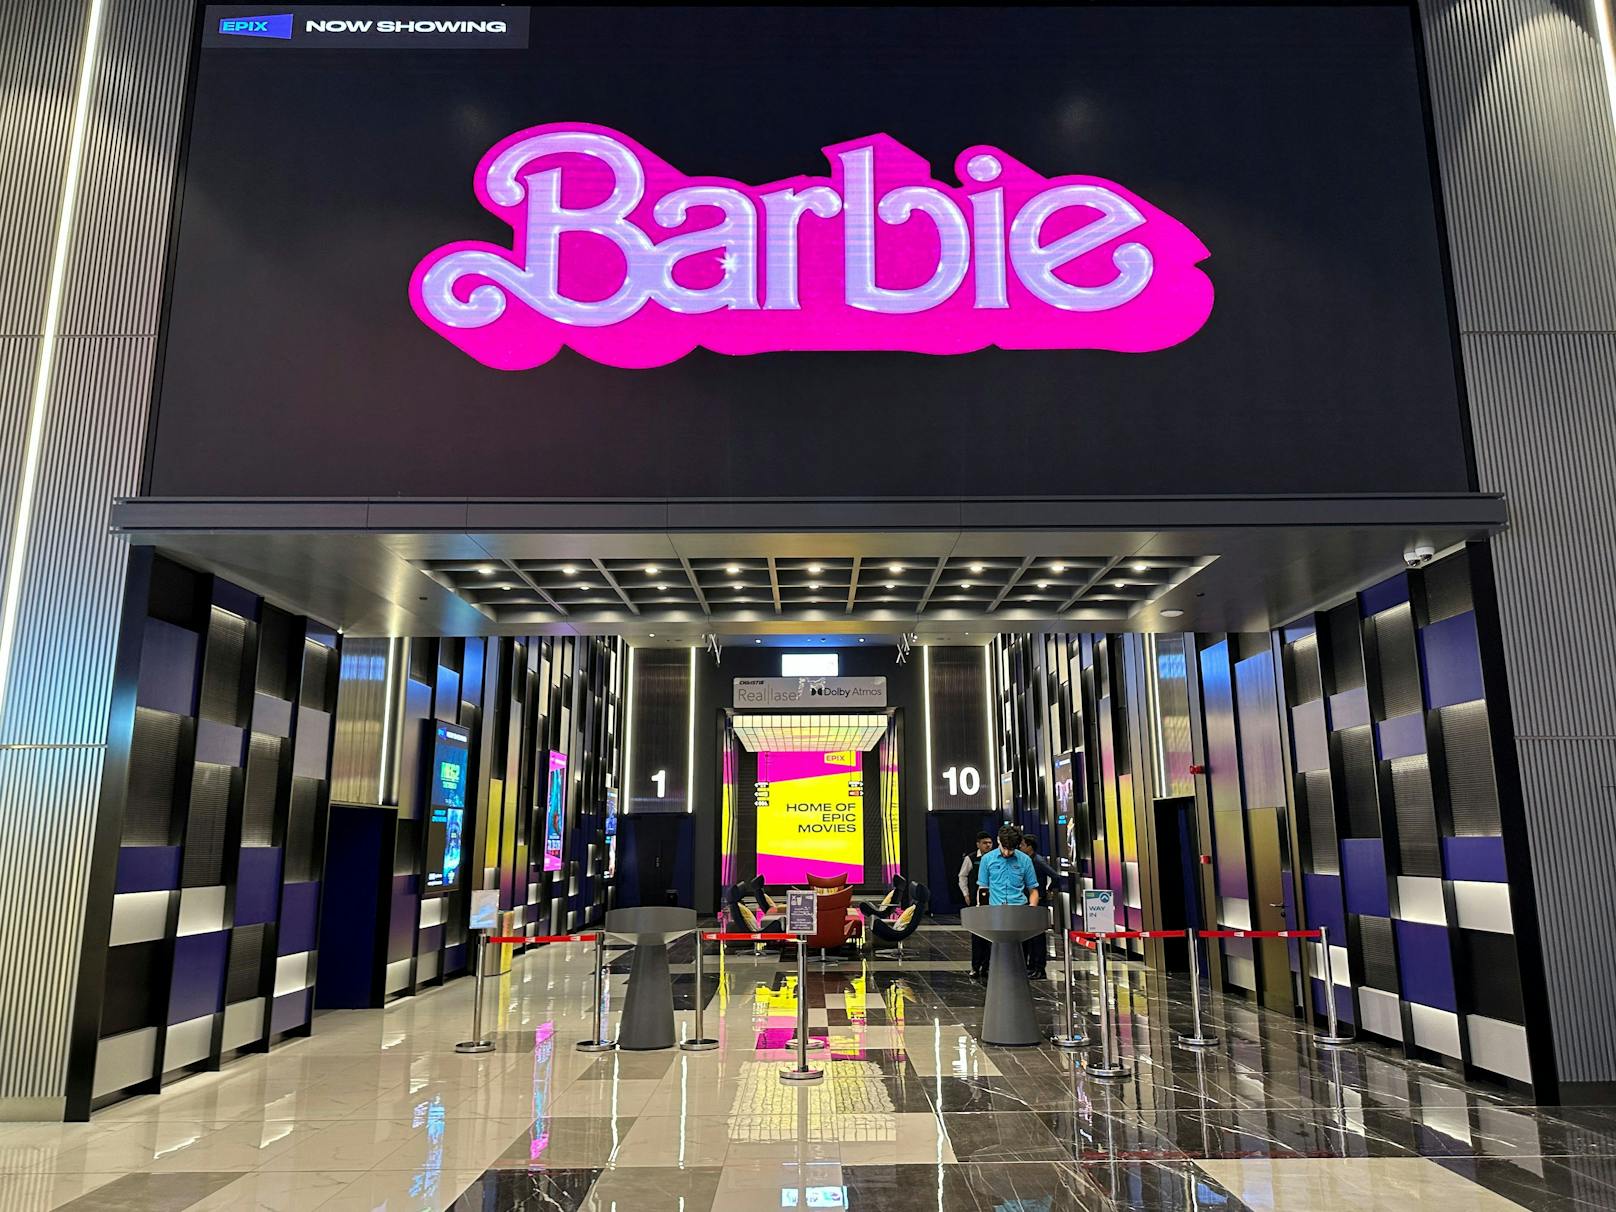 "Werbung für Homosexualität" Land verbietet Barbie-Film